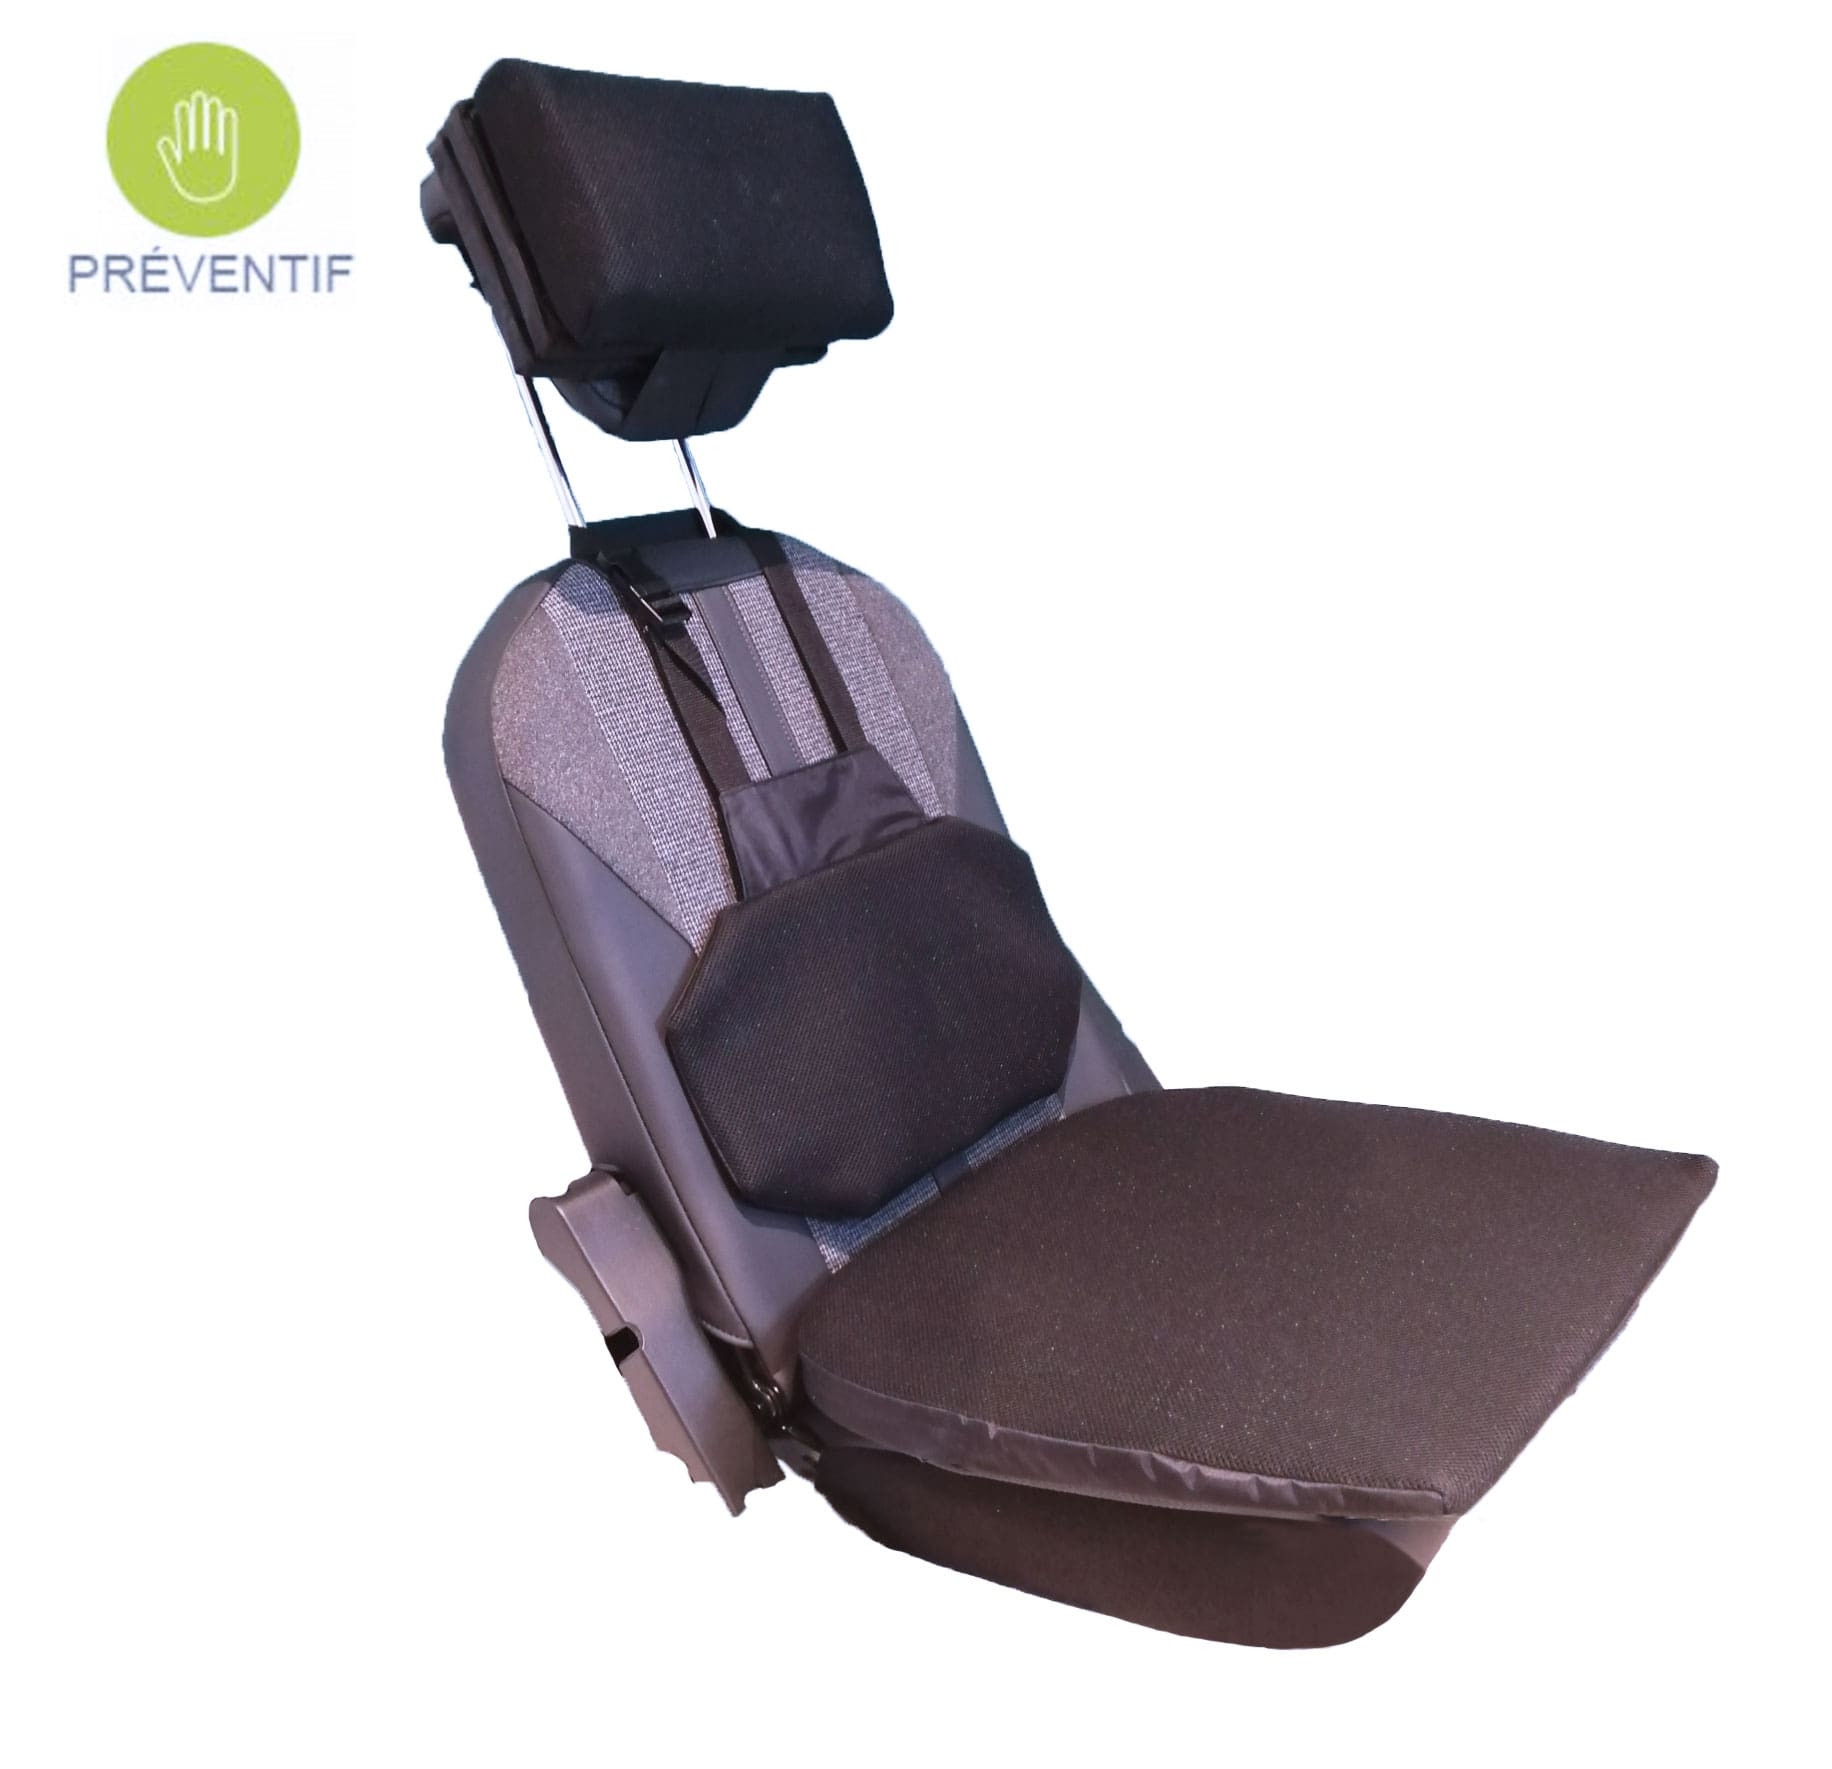 Couvre-siège pour voiture Slide - Accessoires voiture - Tous ergo